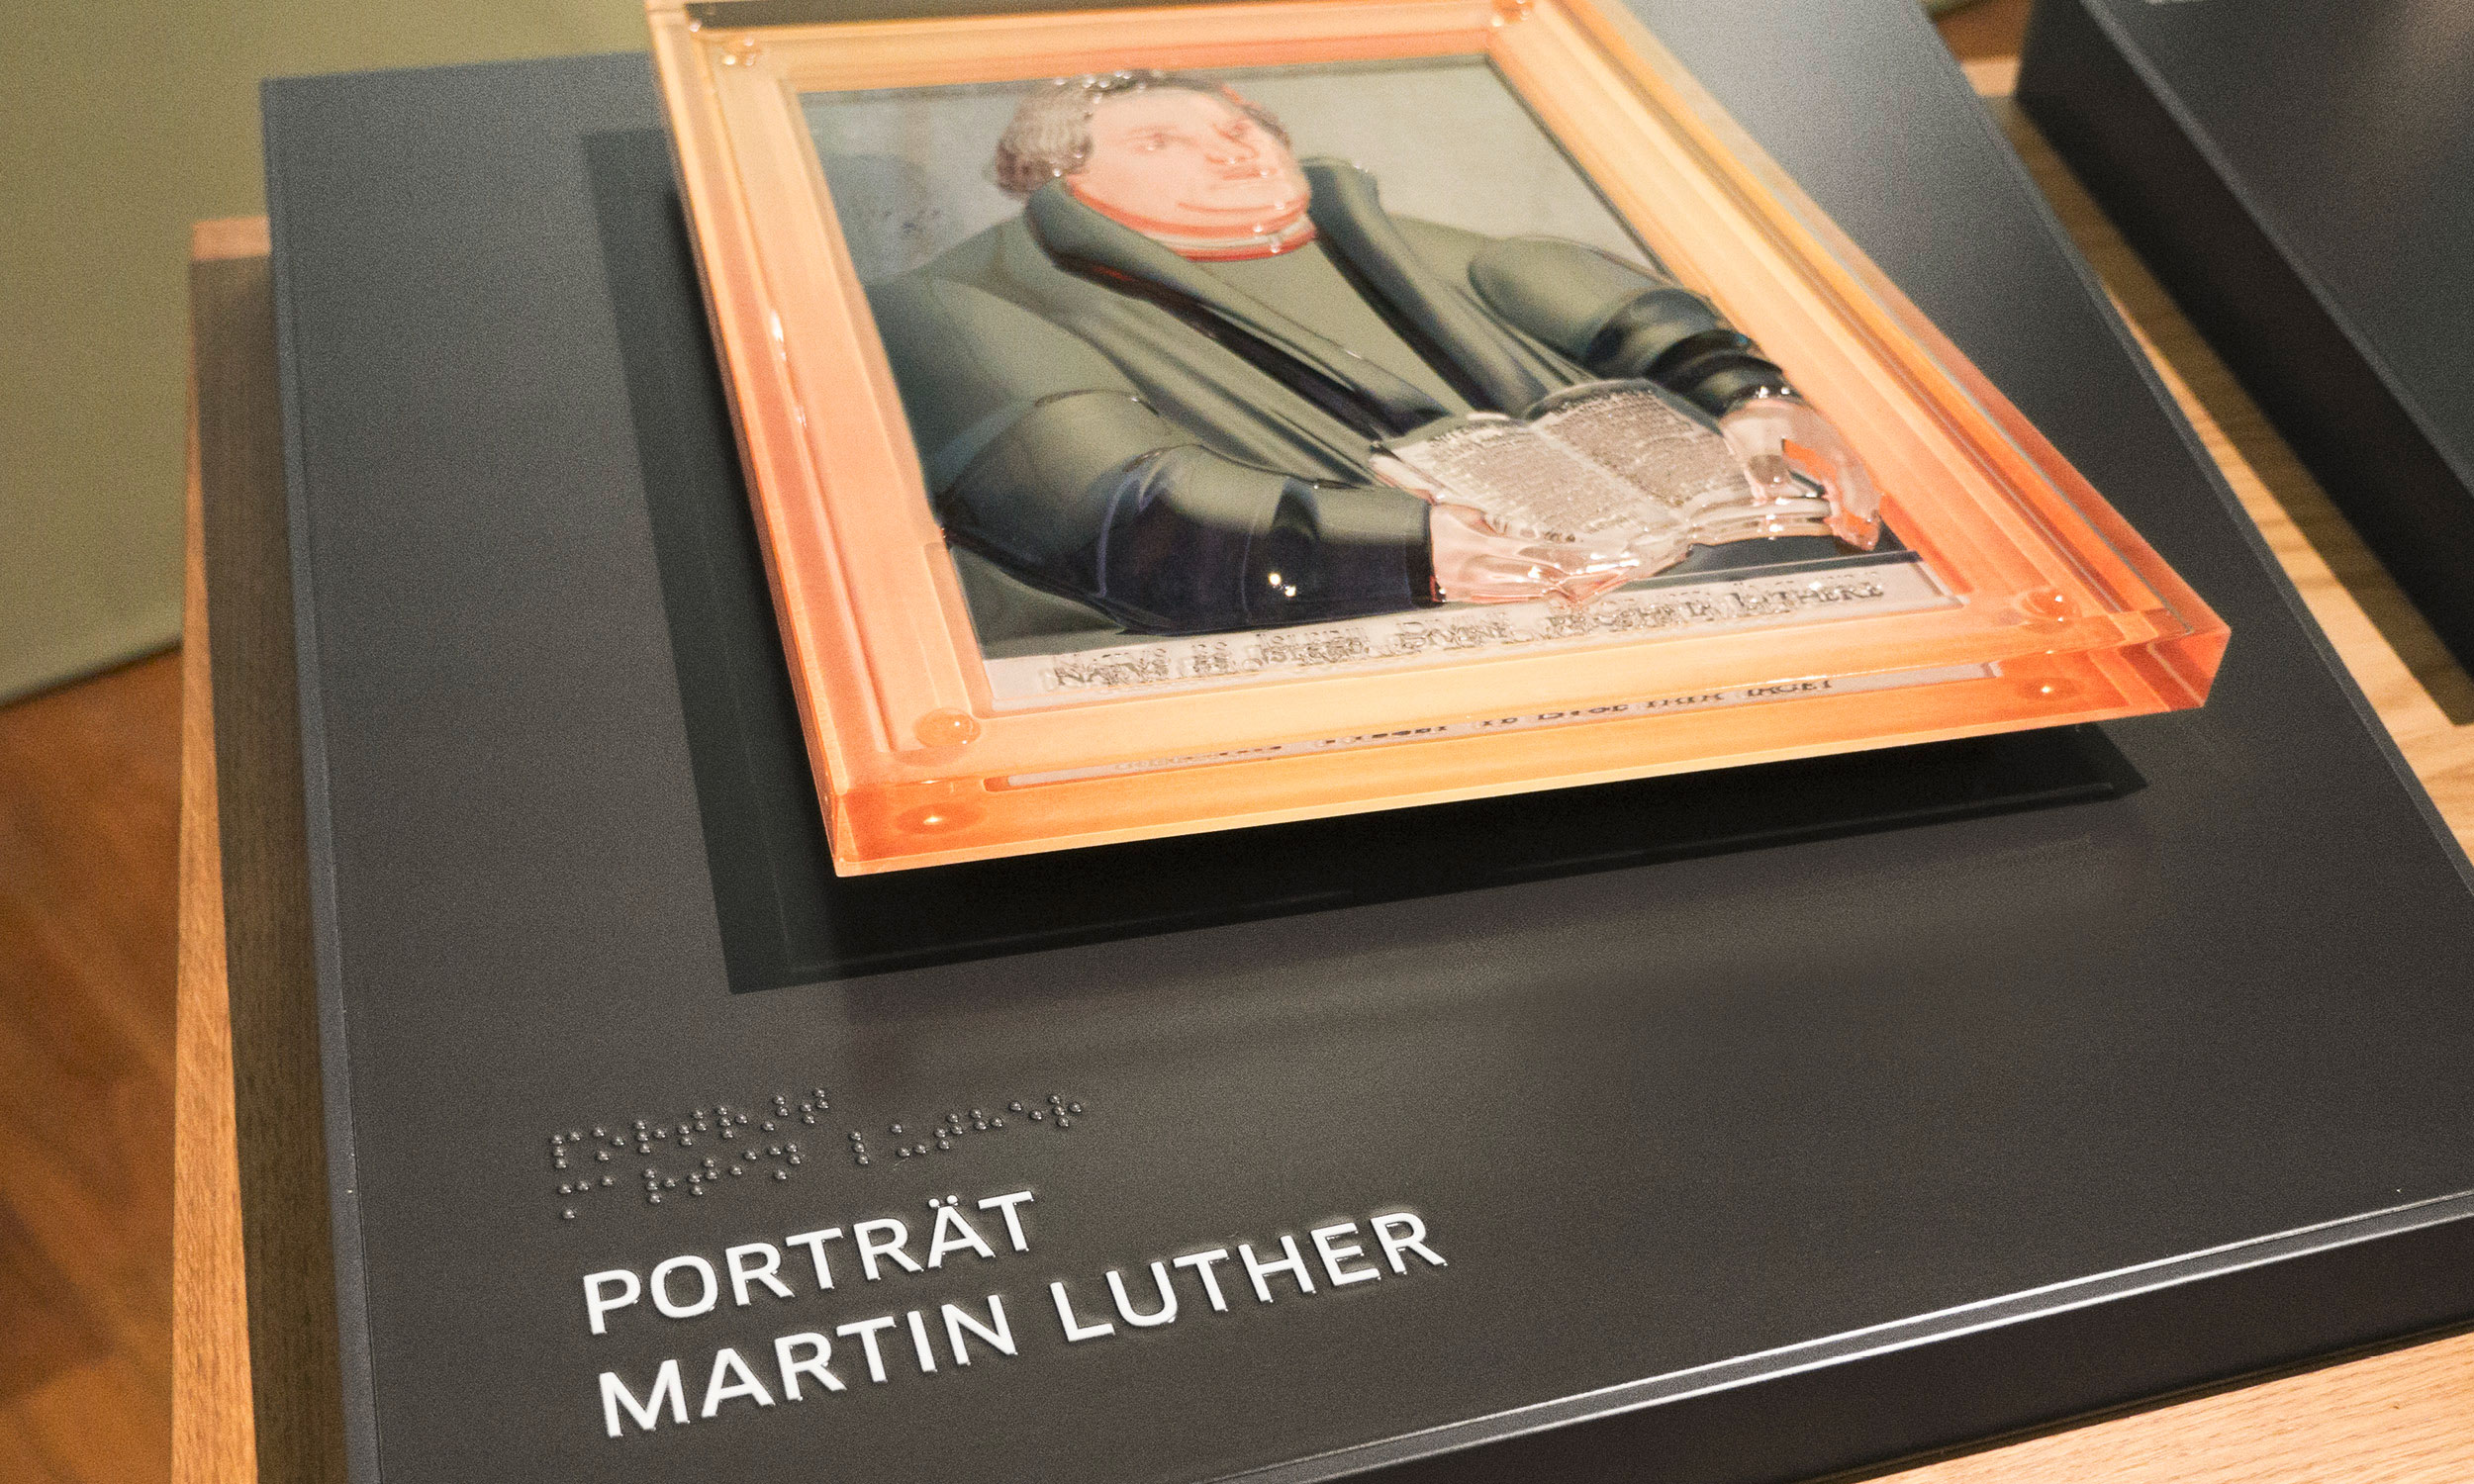 Detailfoto der Taststation mit drehbarem Luther-Gemälde auf einer Trägerplatte mit Beschriftungen in Braille und Profilschrift